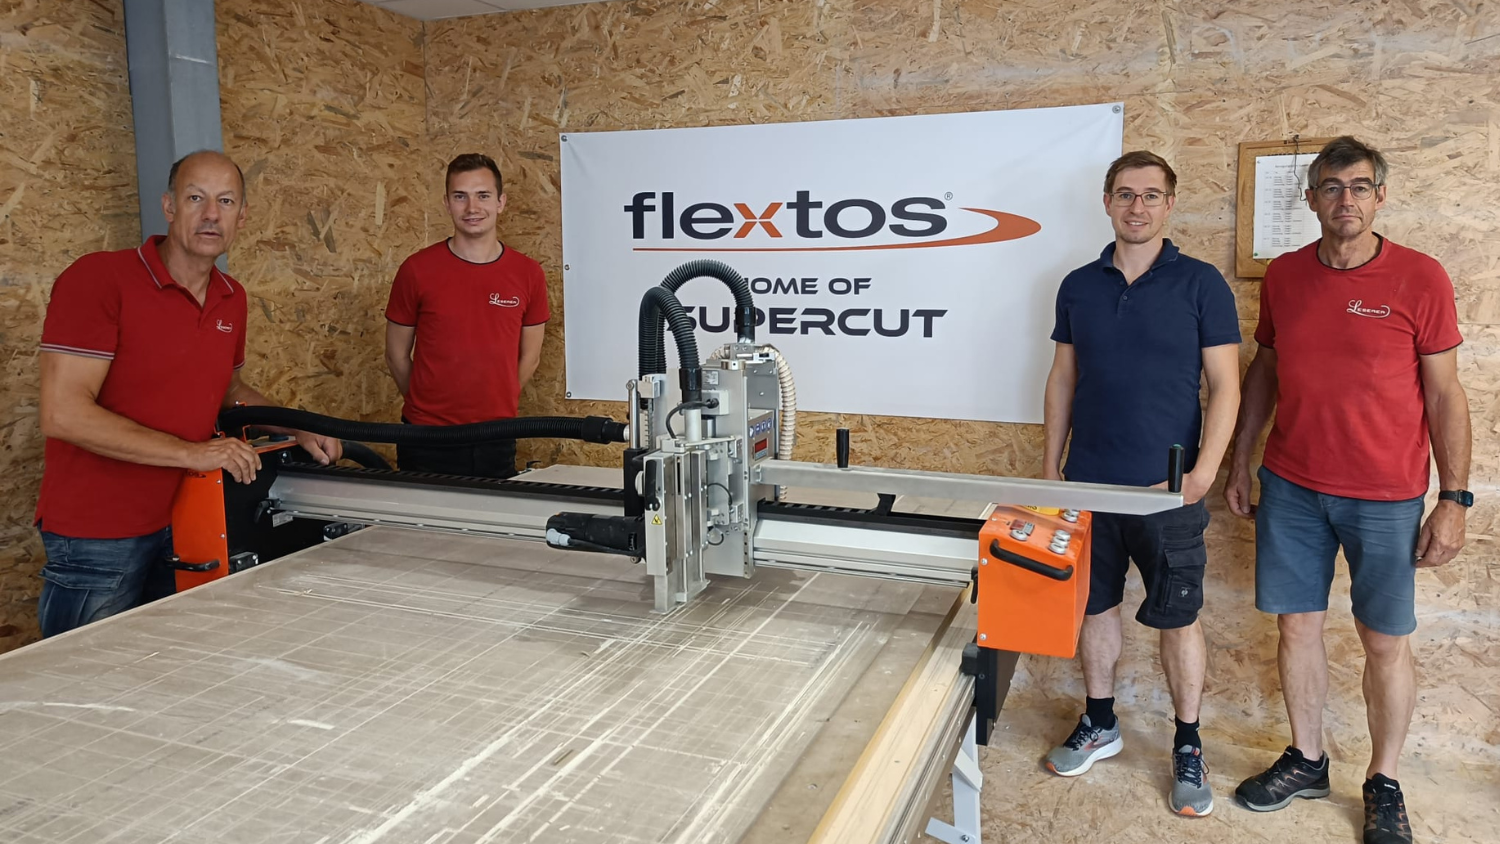 Die Leserer Akustik GmbH ist neuer flextos-Partner mit Supercut XPS-Maschine